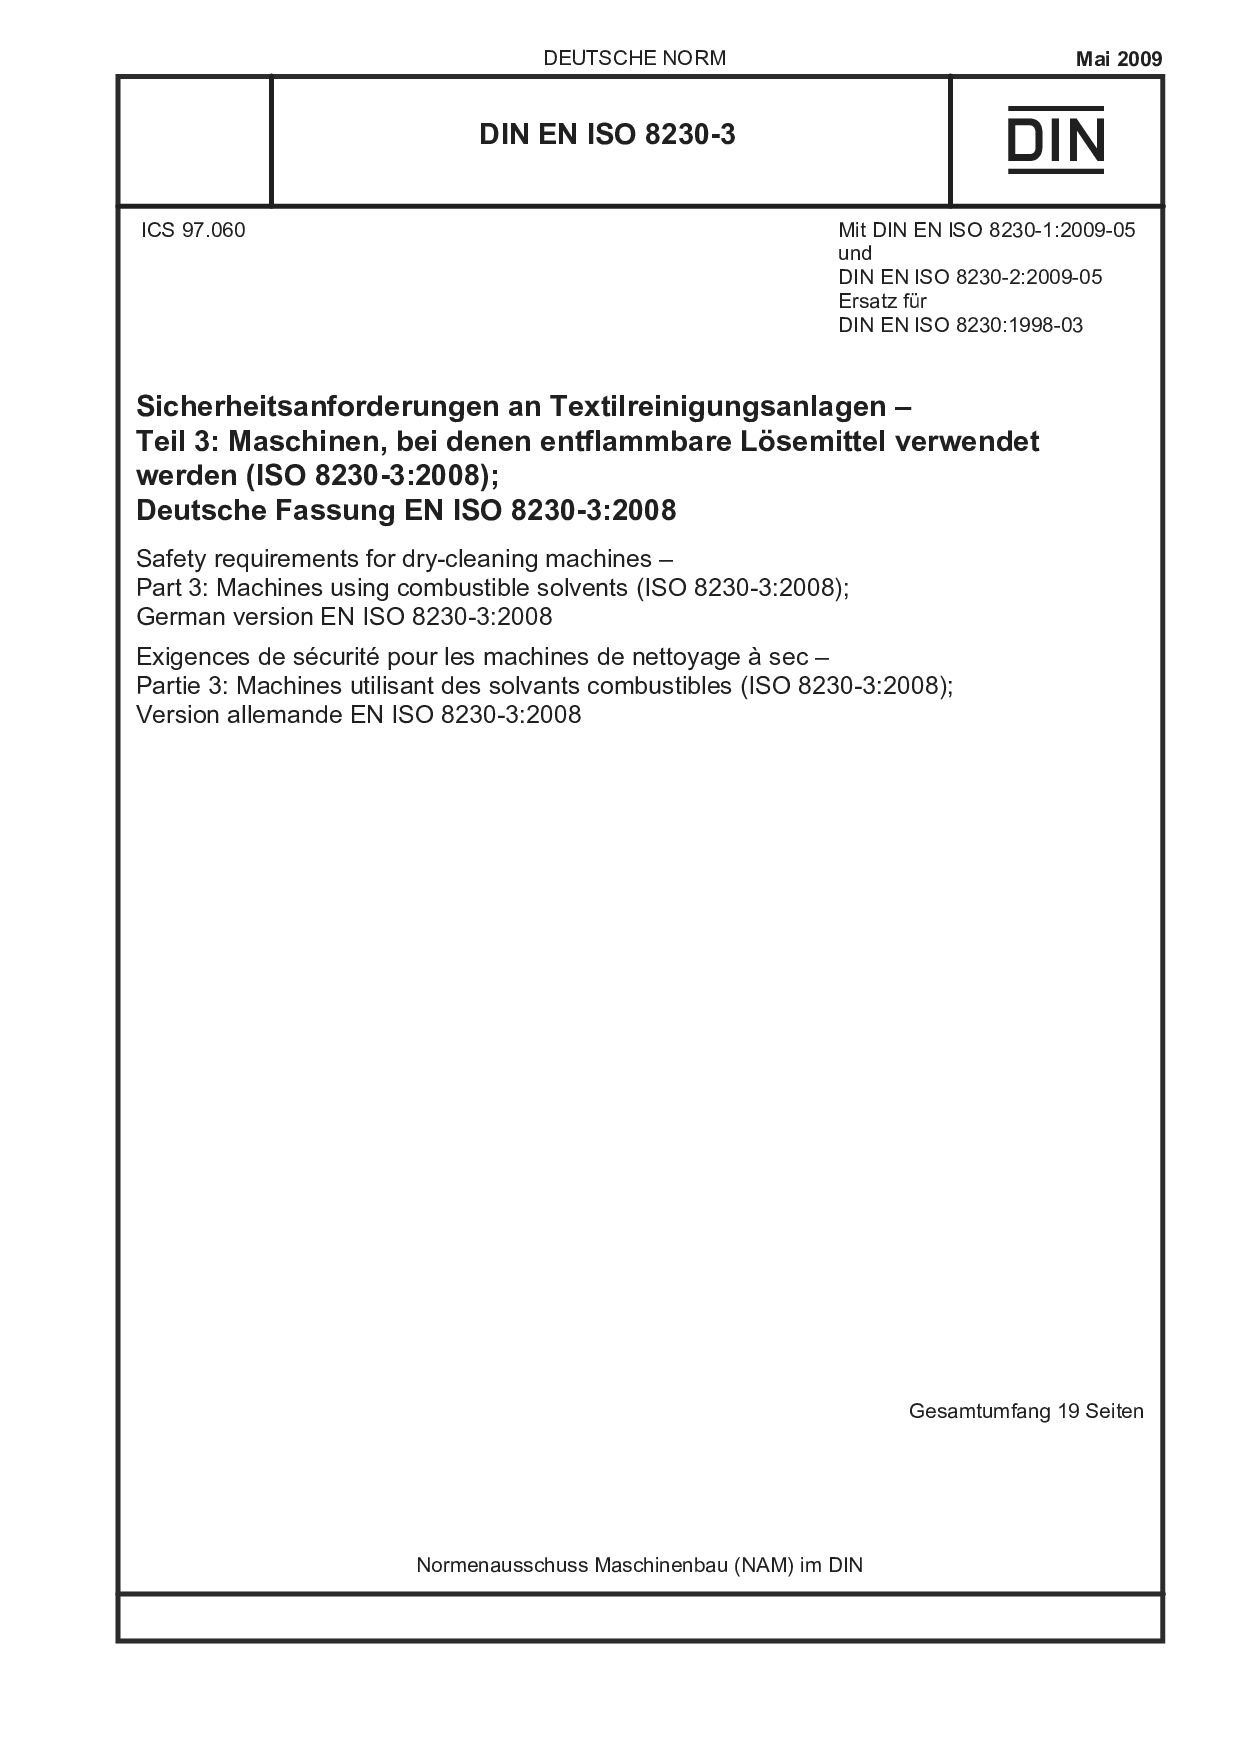 DIN EN ISO 8230-3:2009